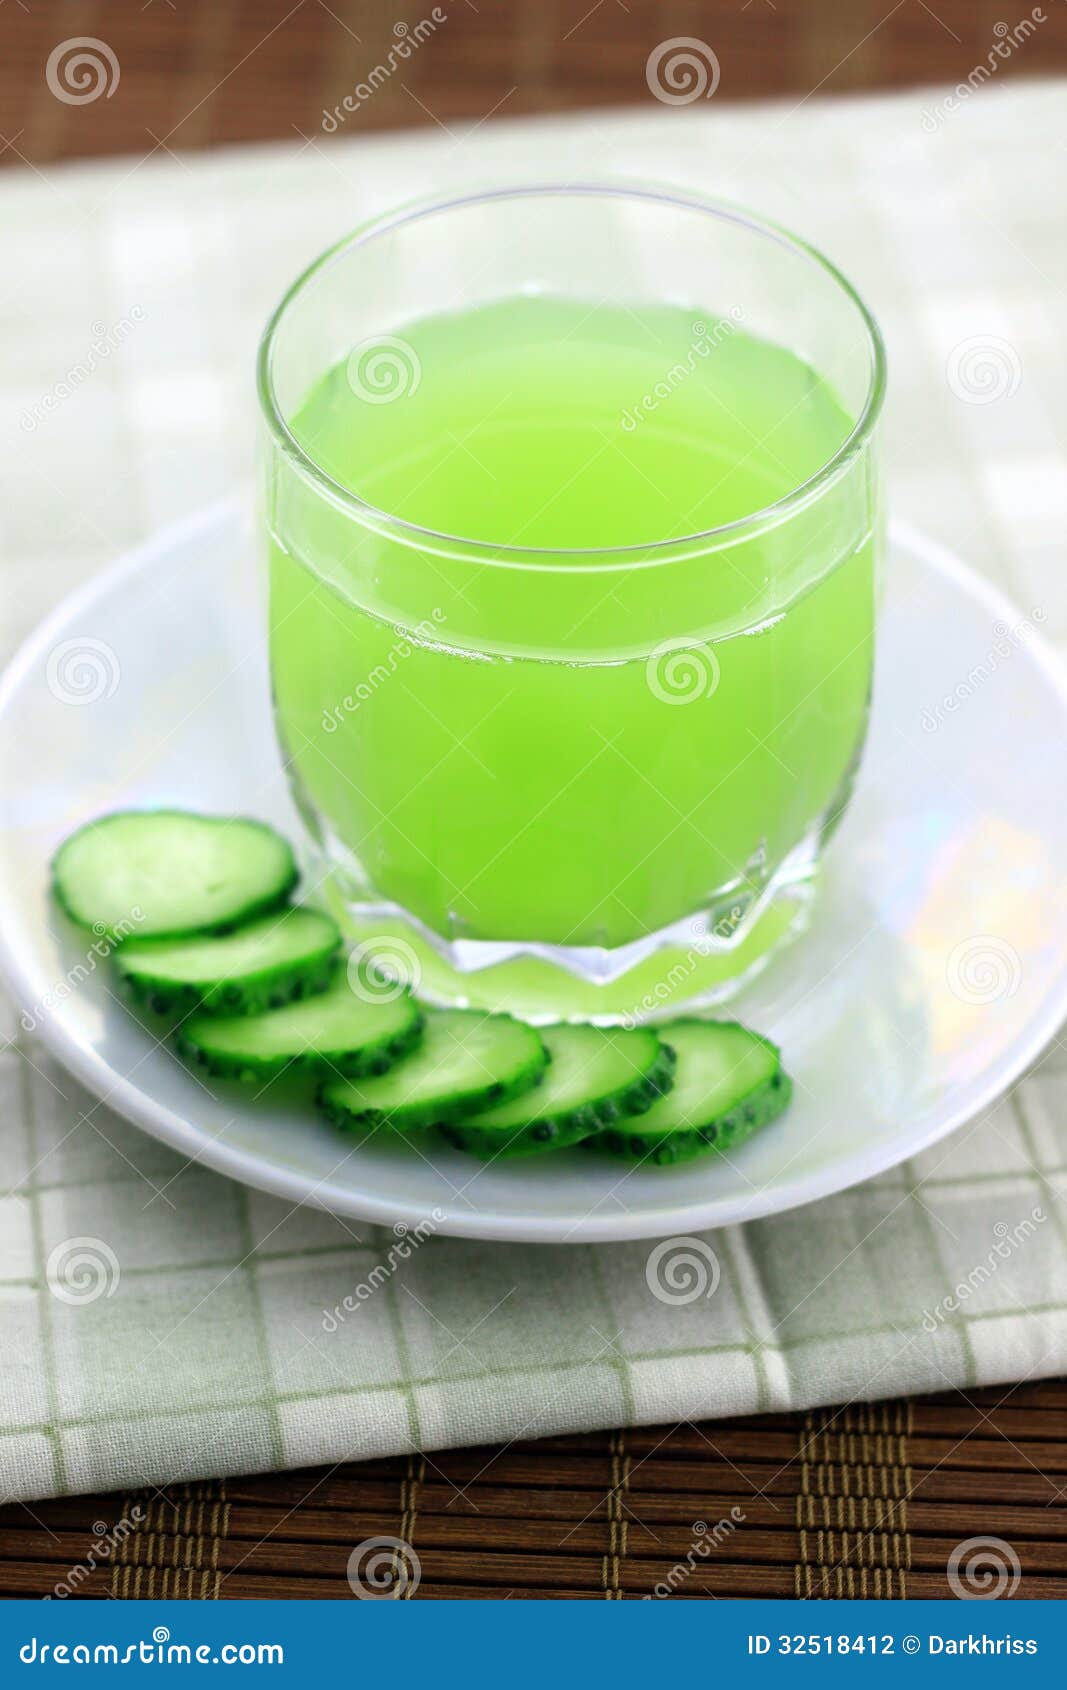 芹菜黄瓜汁怎么做_芹菜黄瓜汁的做法_豆果美食